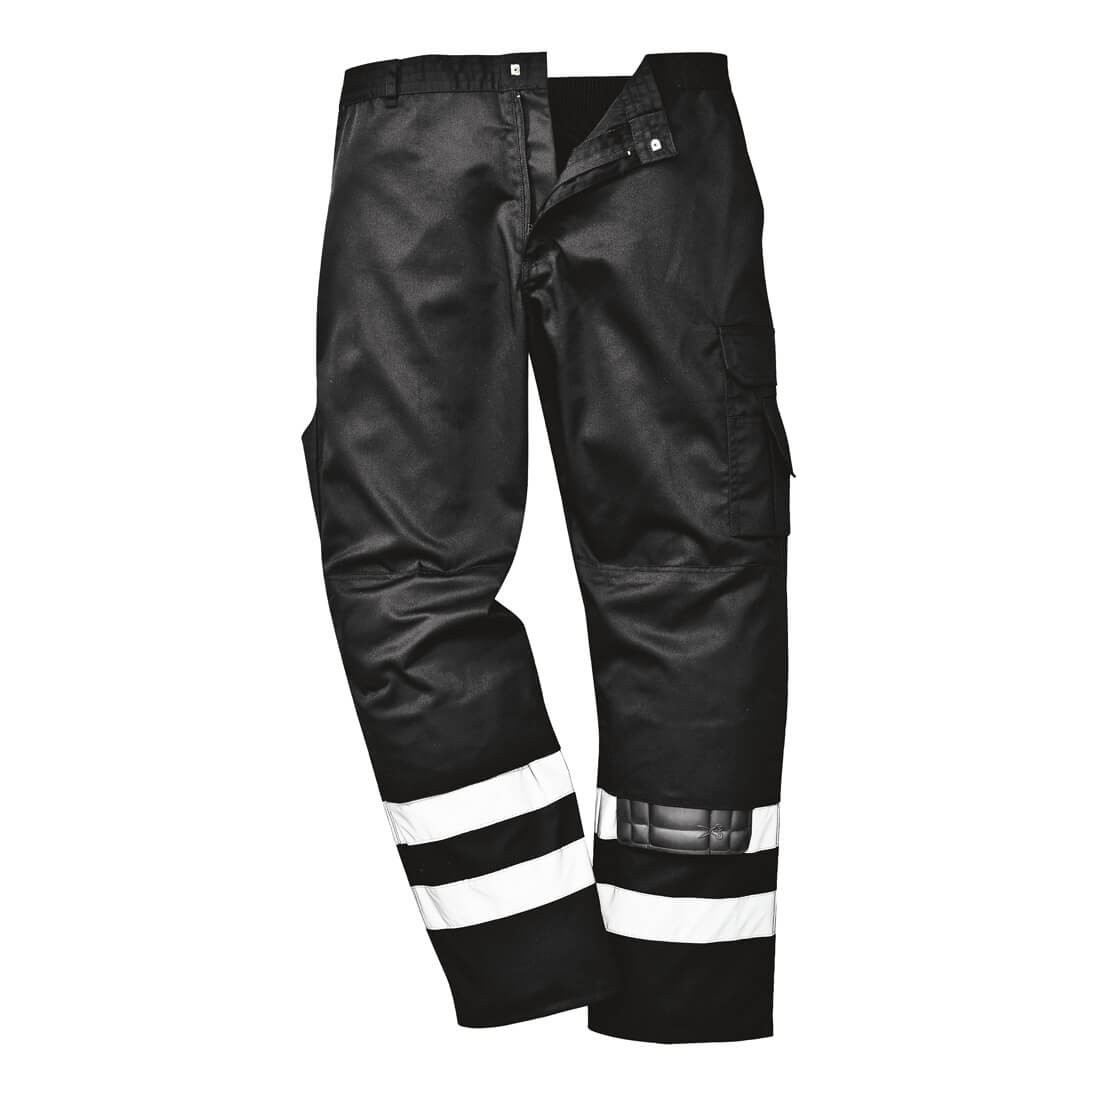 Pantaloni di sicurezza Iona - Abbigliamento di protezione